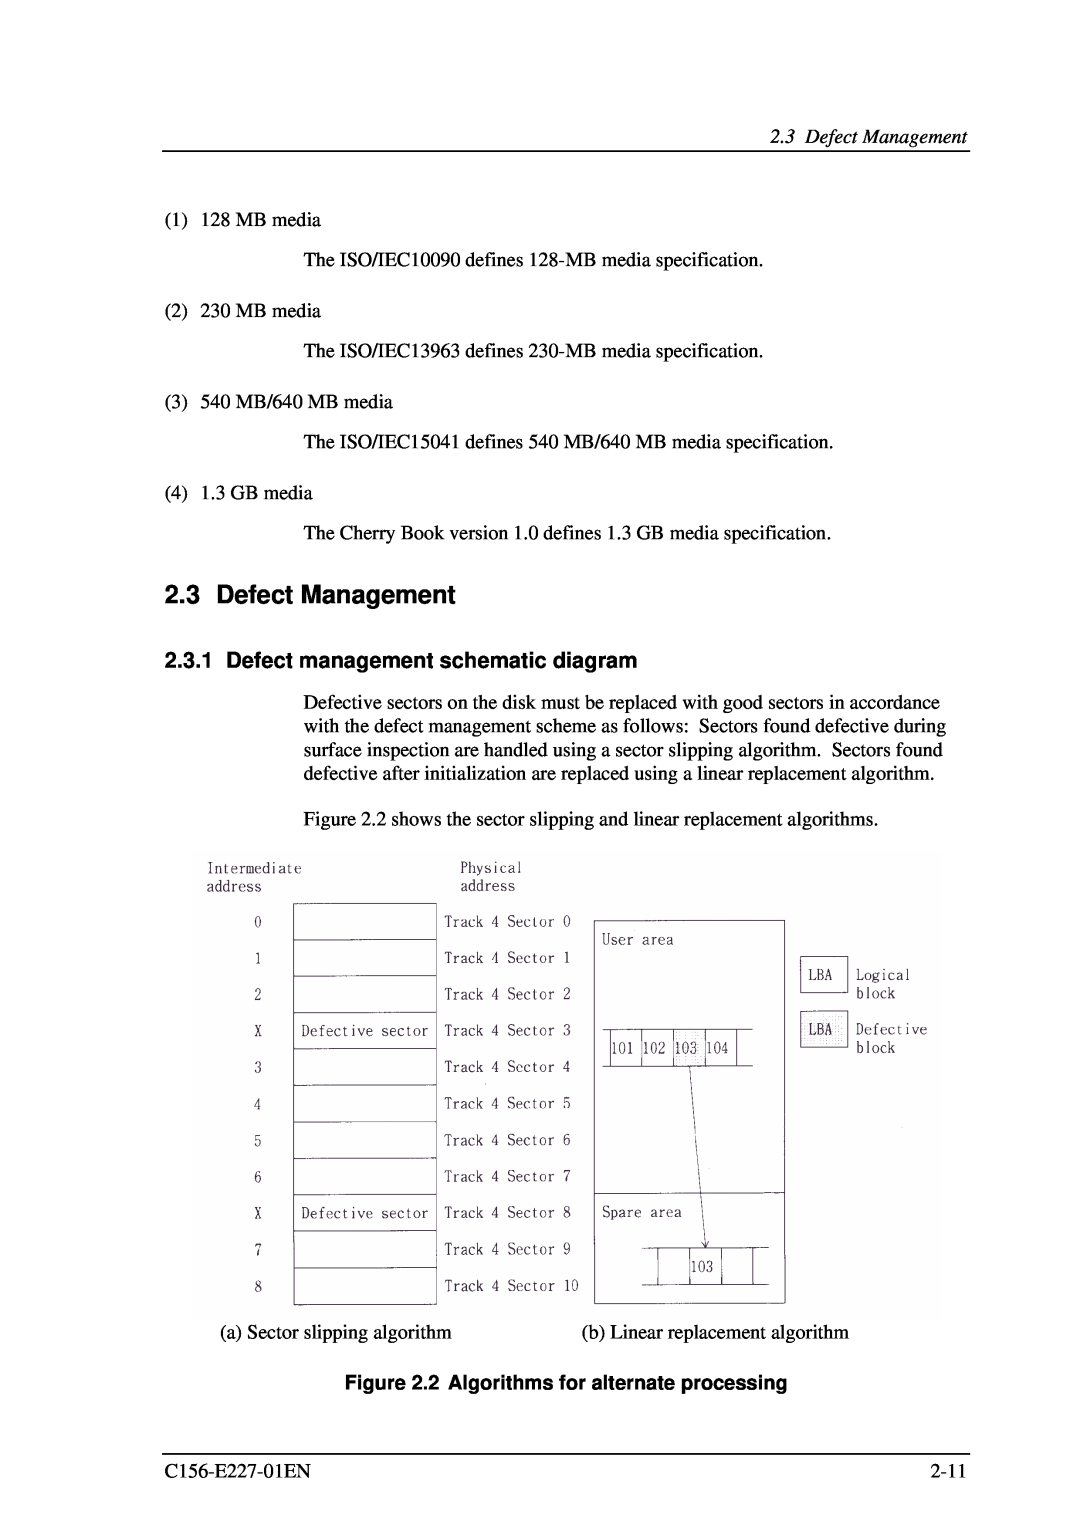 Fujitsu MCM3130AP, MCM3064AP Defect Management, Defect management schematic diagram, 2 Algorithms for alternate processing 